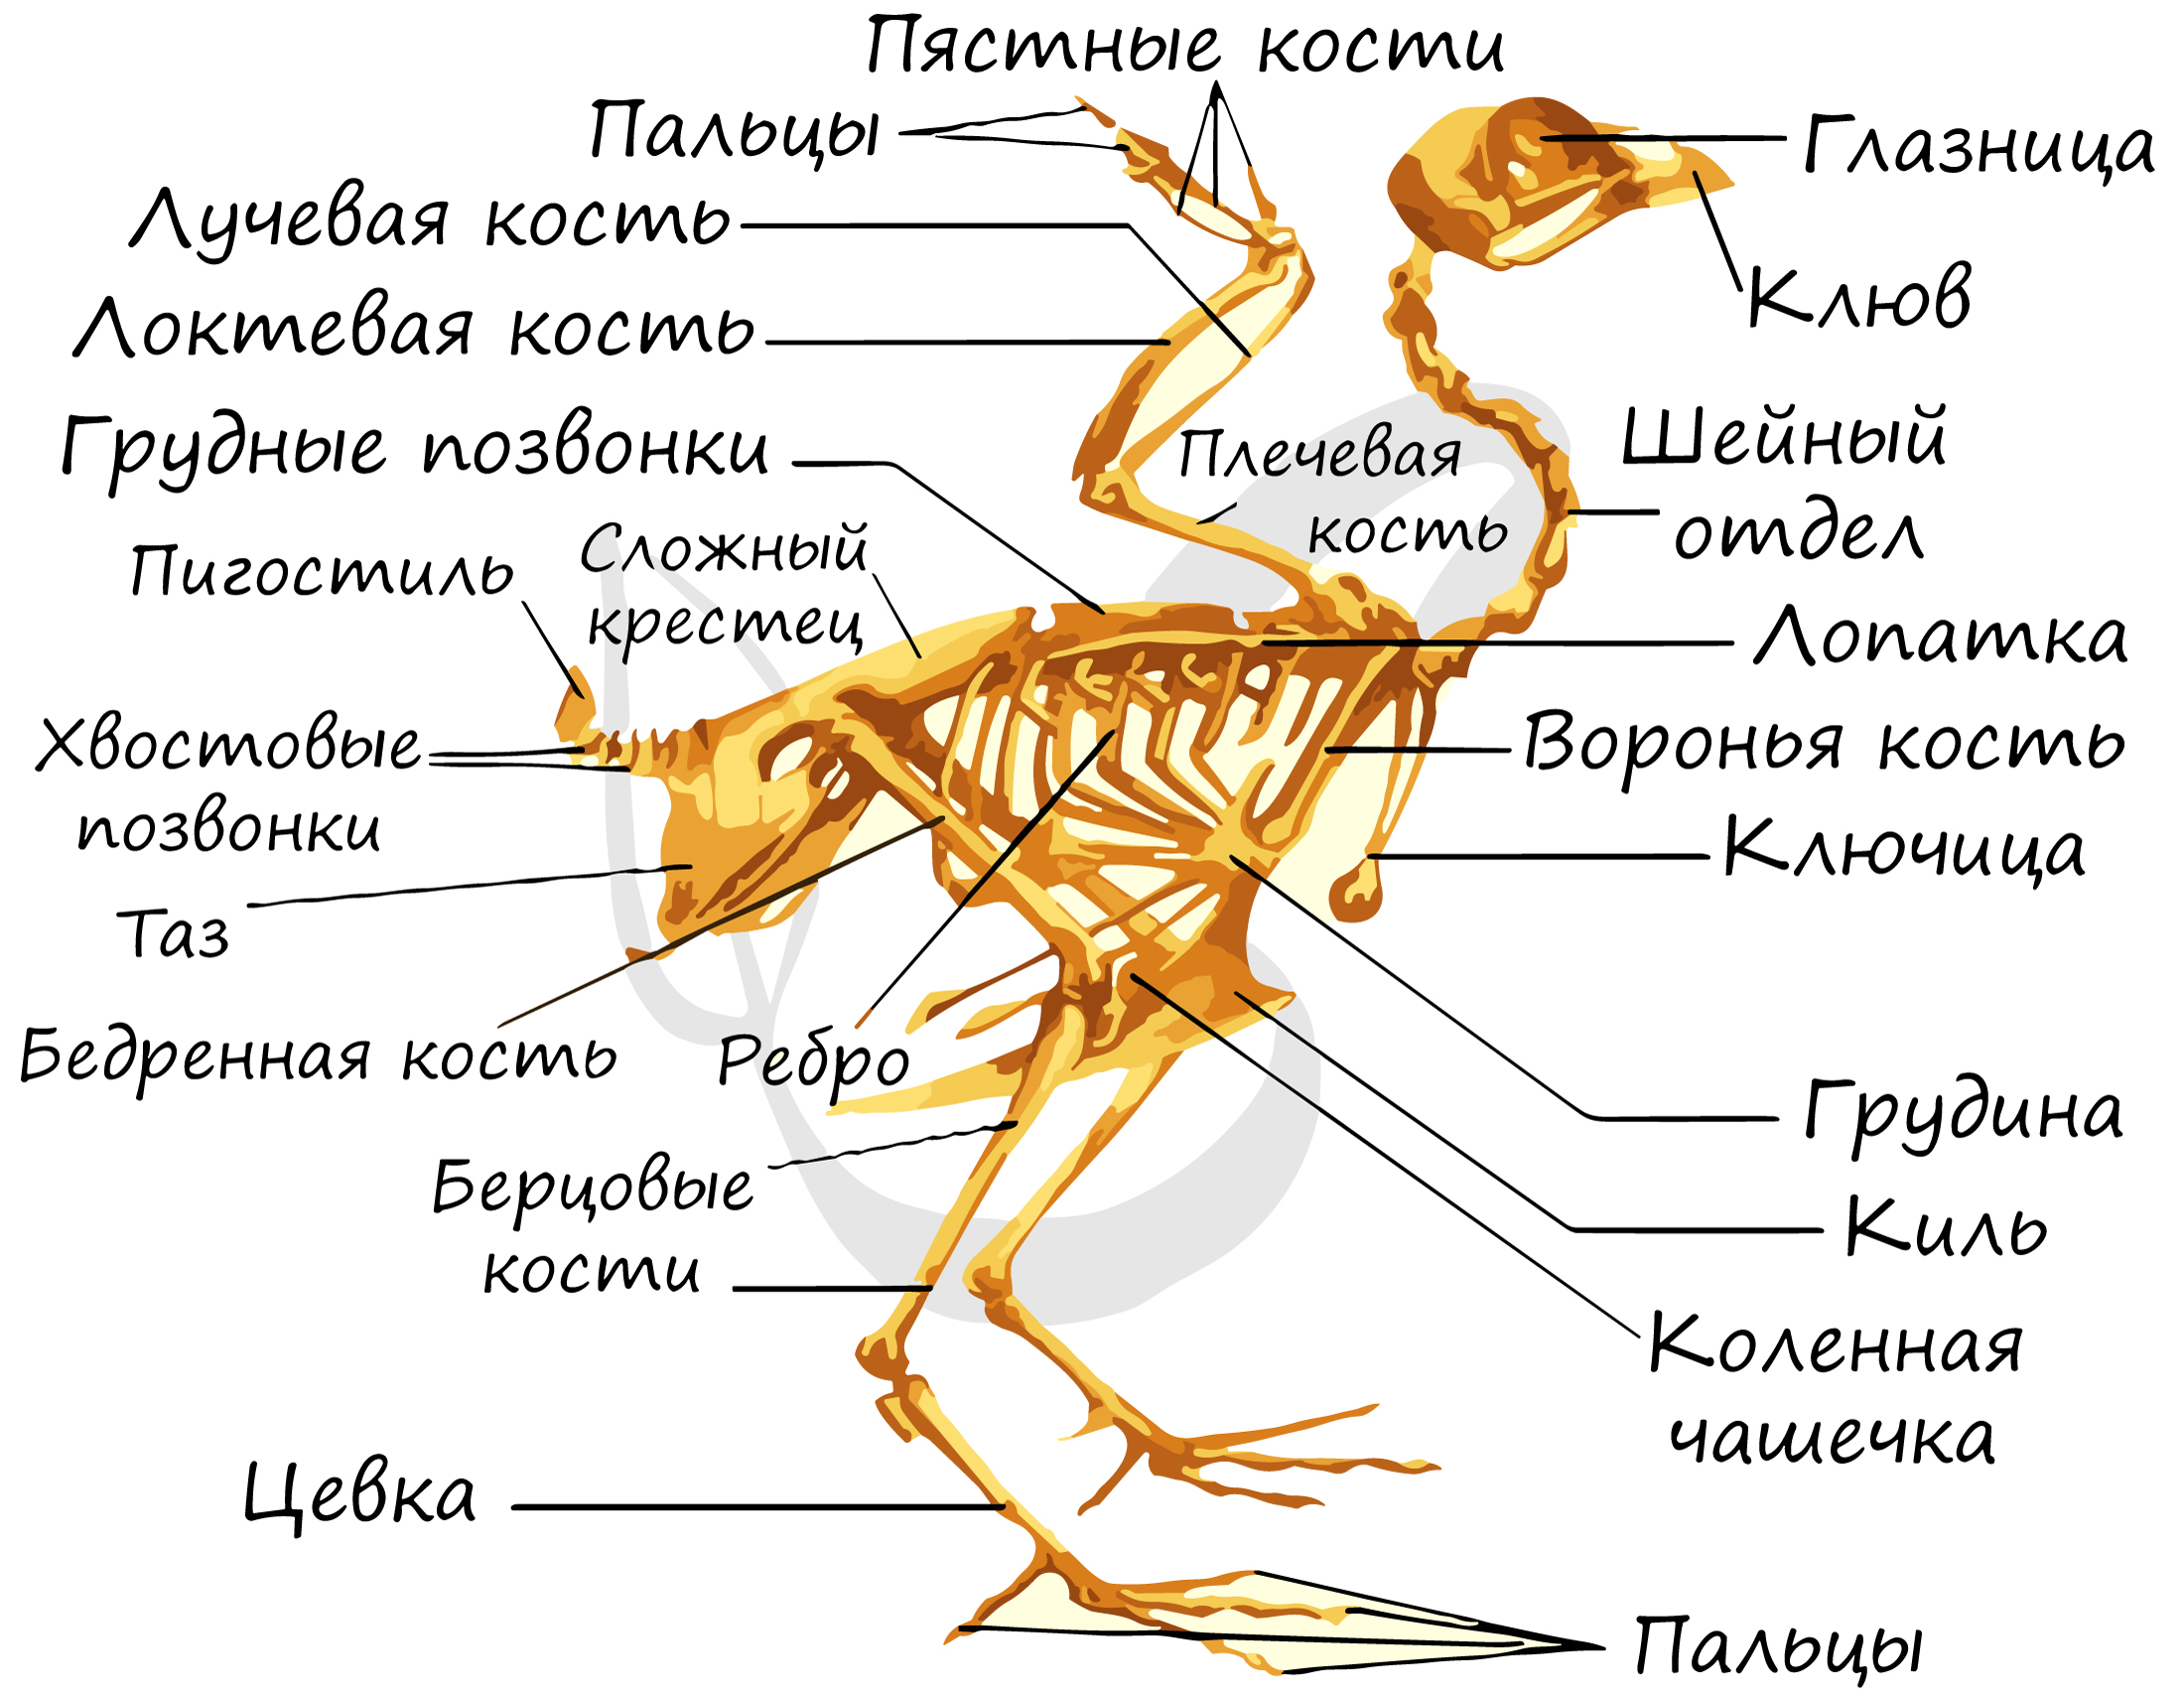 Скелет передней конечности птиц состоит из. Скелет птицы цевка. Скелет птицы пояс передних конечностей. Скелет птицы пояс задних конечностей. Строение скелета курицы.